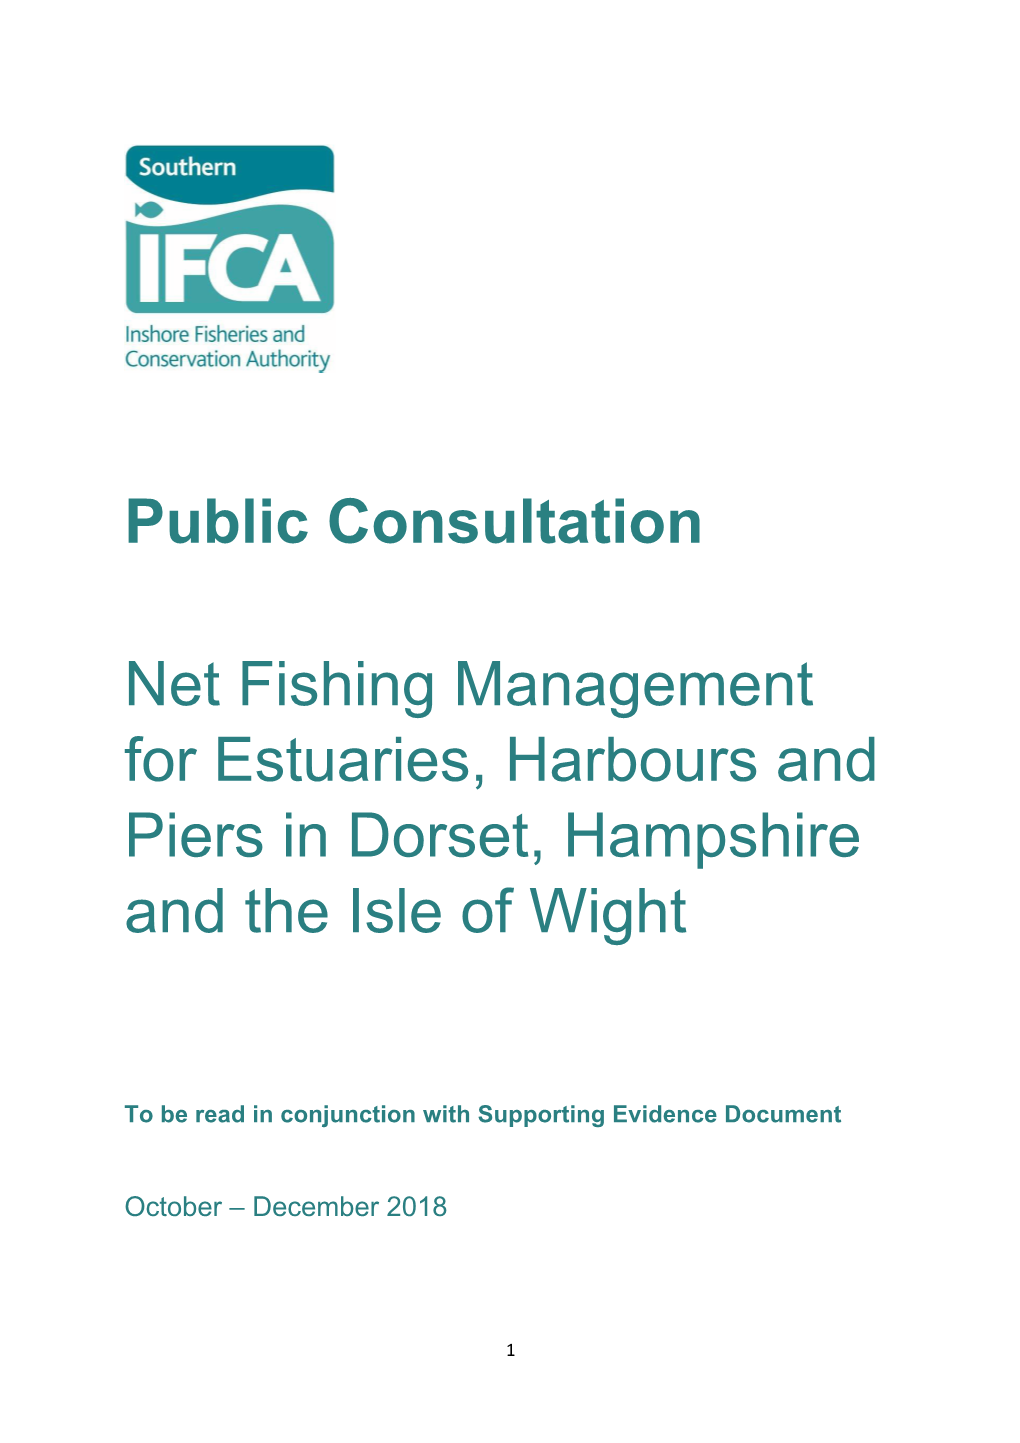 Public Consultation Net Fishing Management for Estuaries